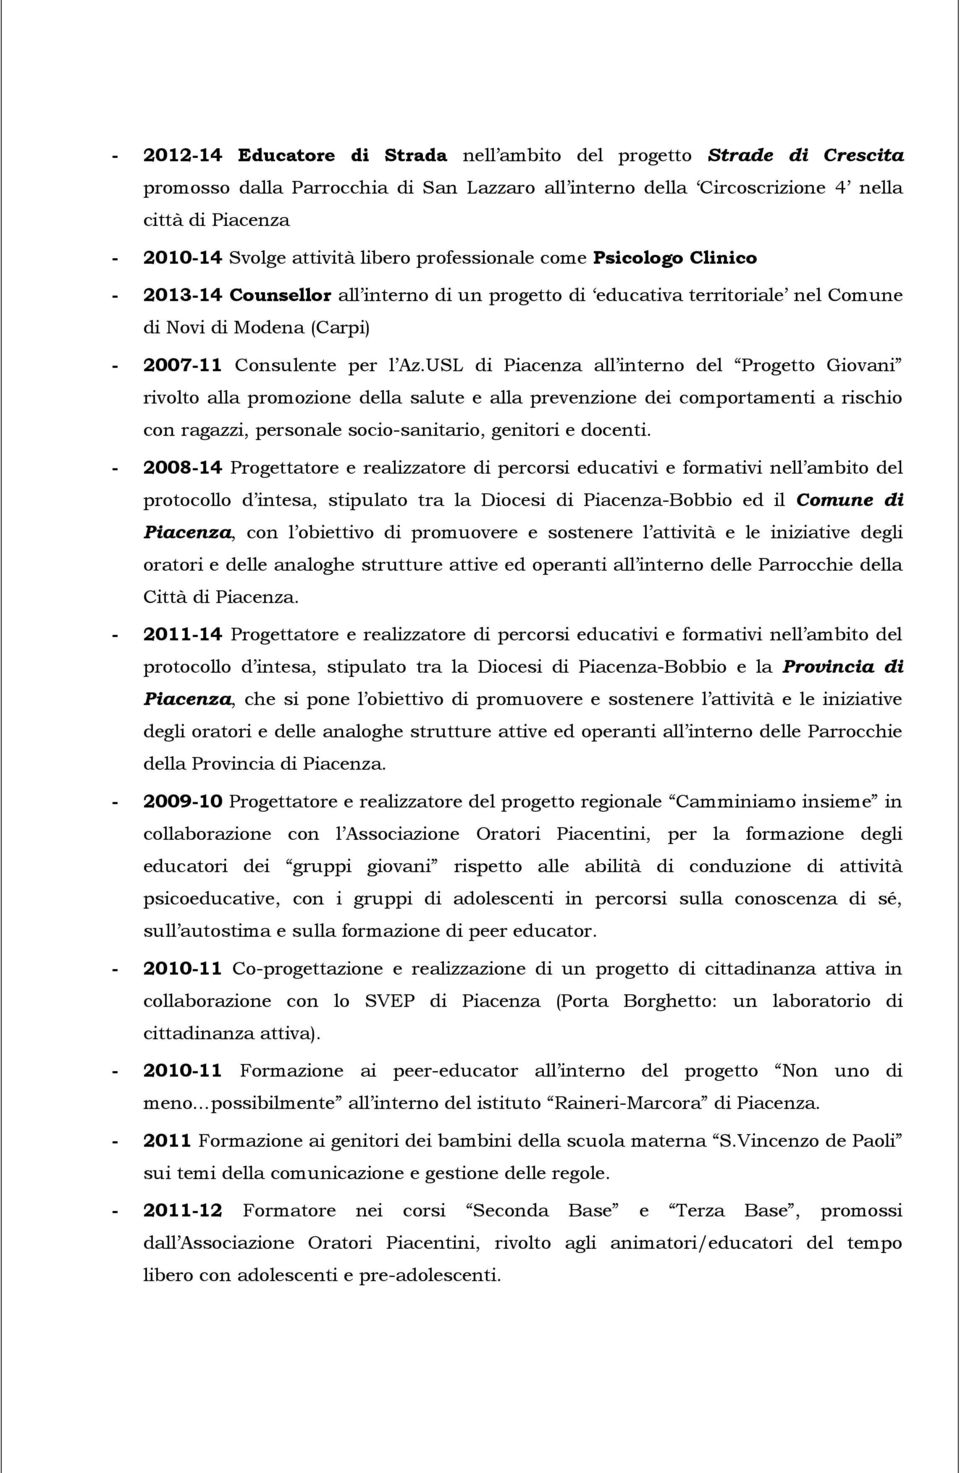 USL di Piacenza all intern del Prgett Givani rivlt alla prmzine della salute e alla prevenzine dei cmprtamenti a rischi cn ragazzi, persnale sci-sanitari, genitri e dcenti.